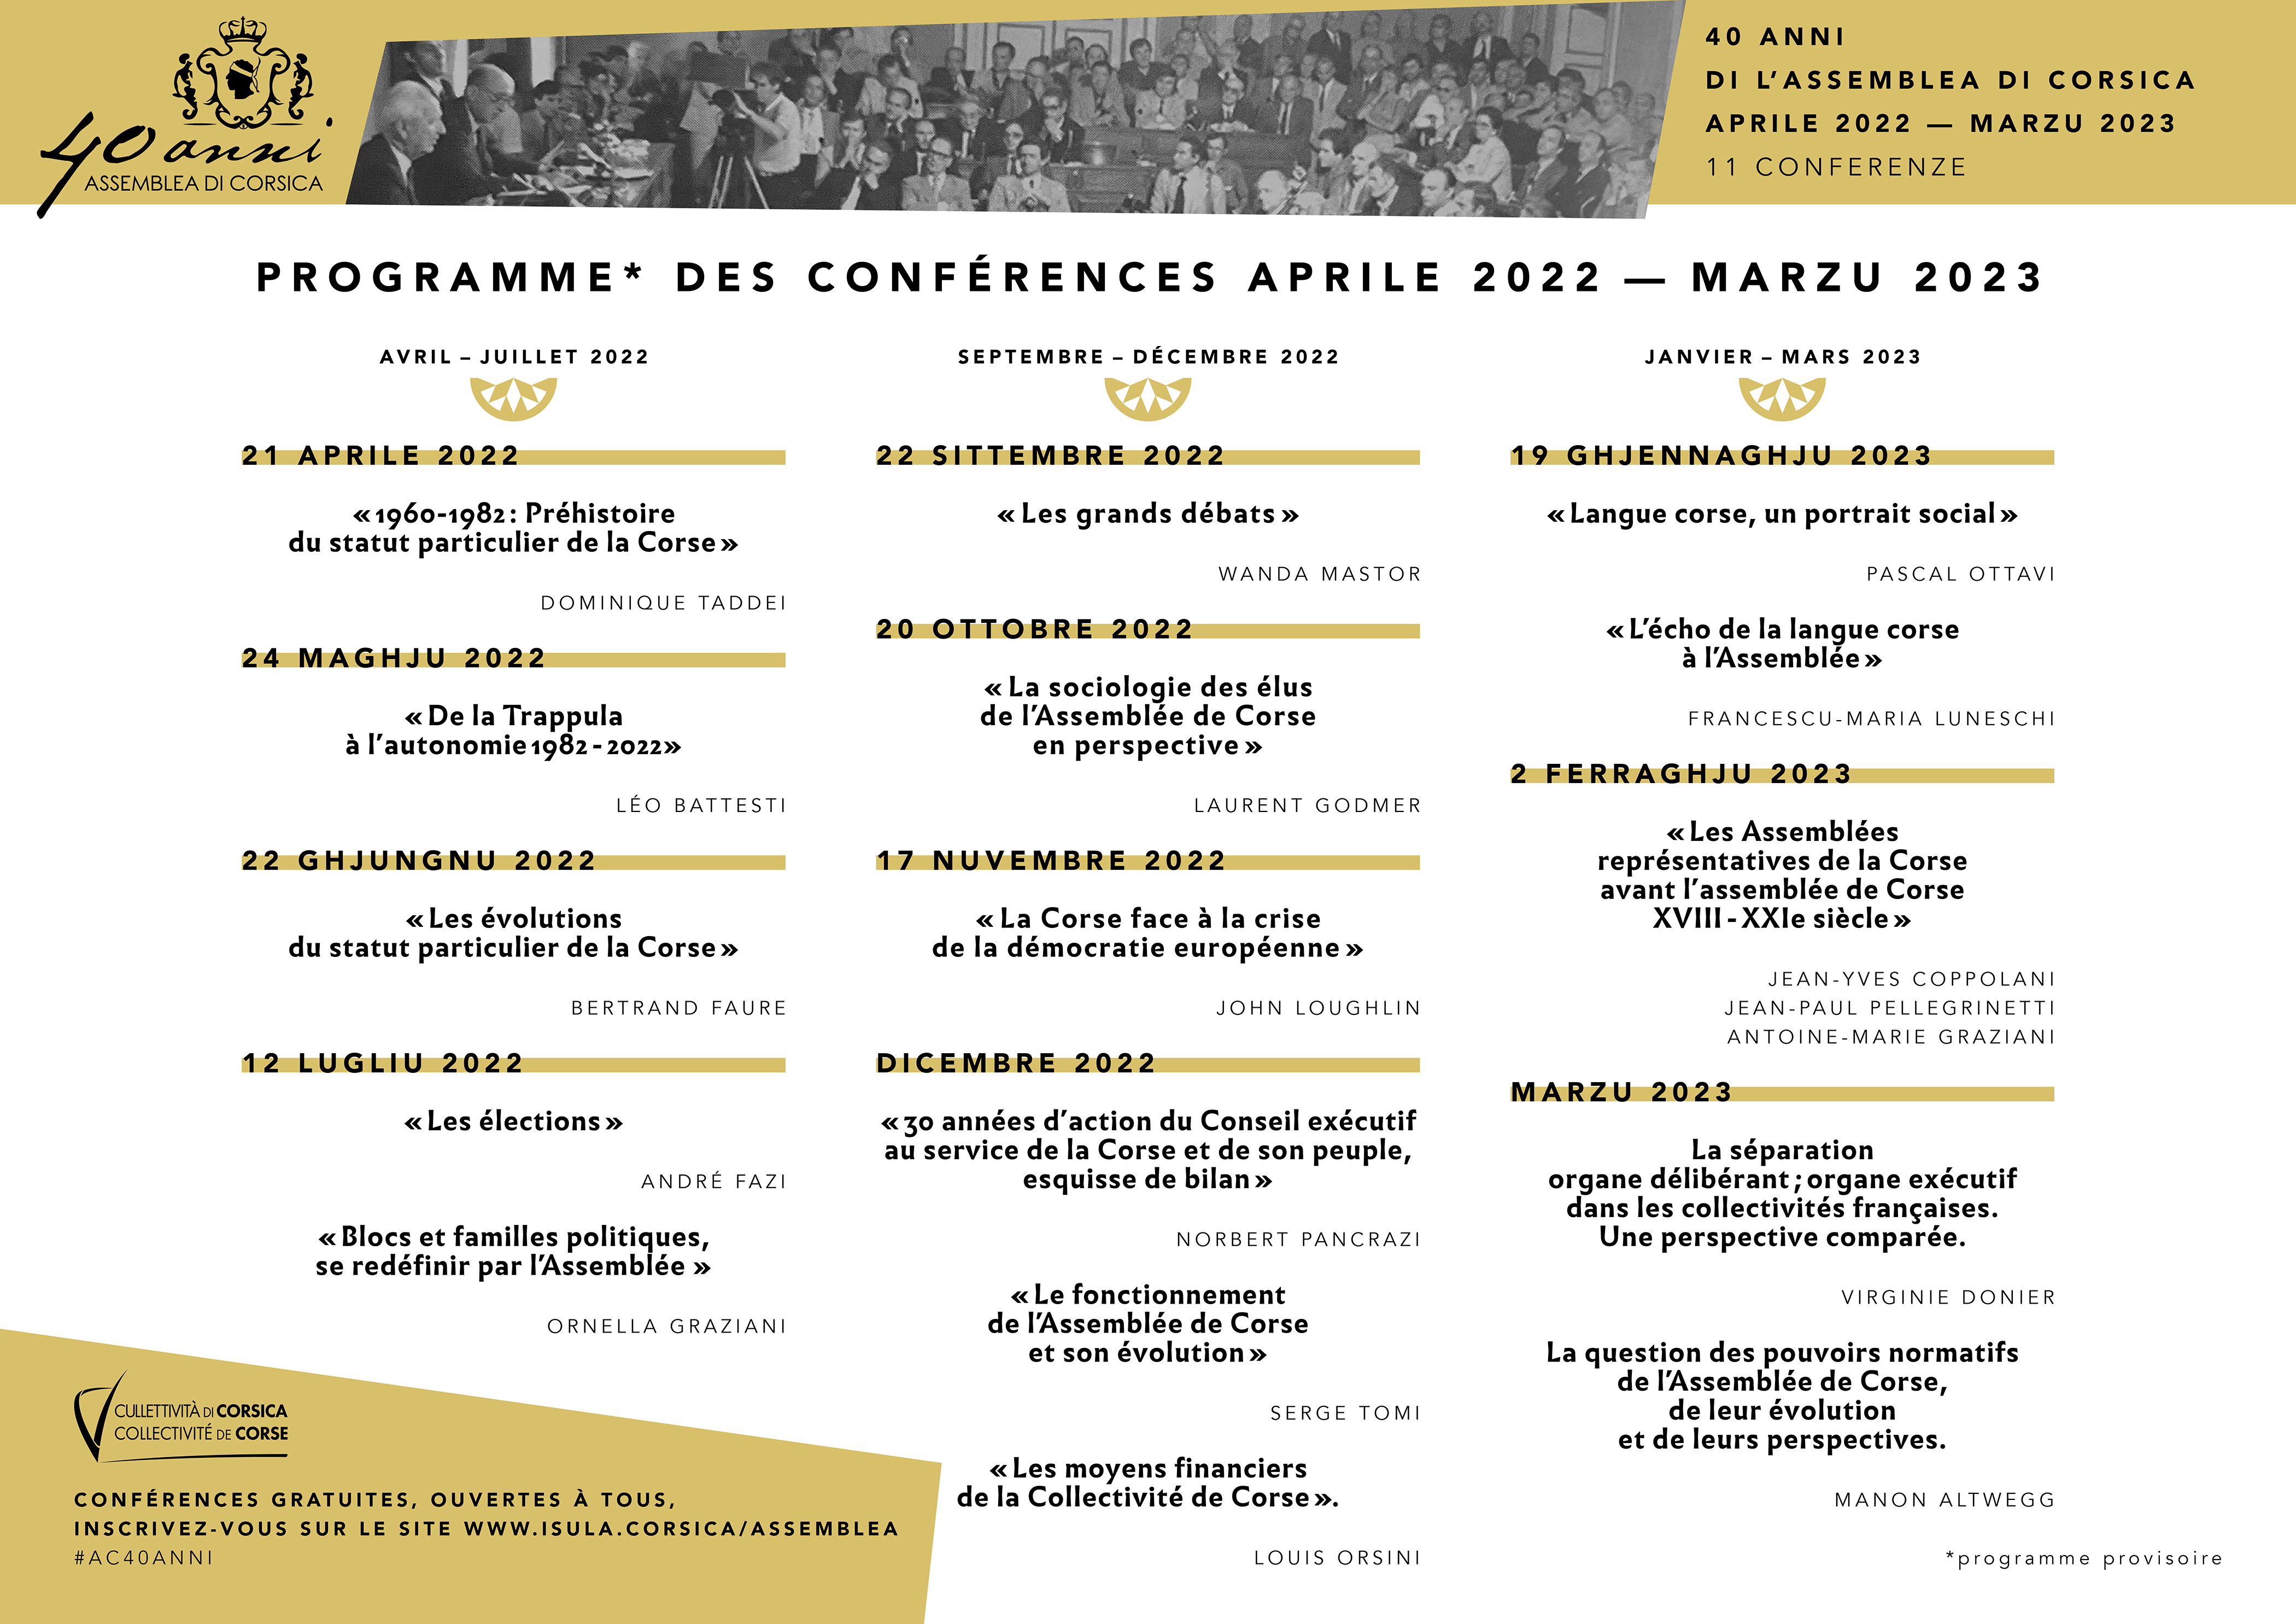 40 anni di l'Assemblea di Corsica : Cycle de conférences inédit d'avril 2022 à mars 2023